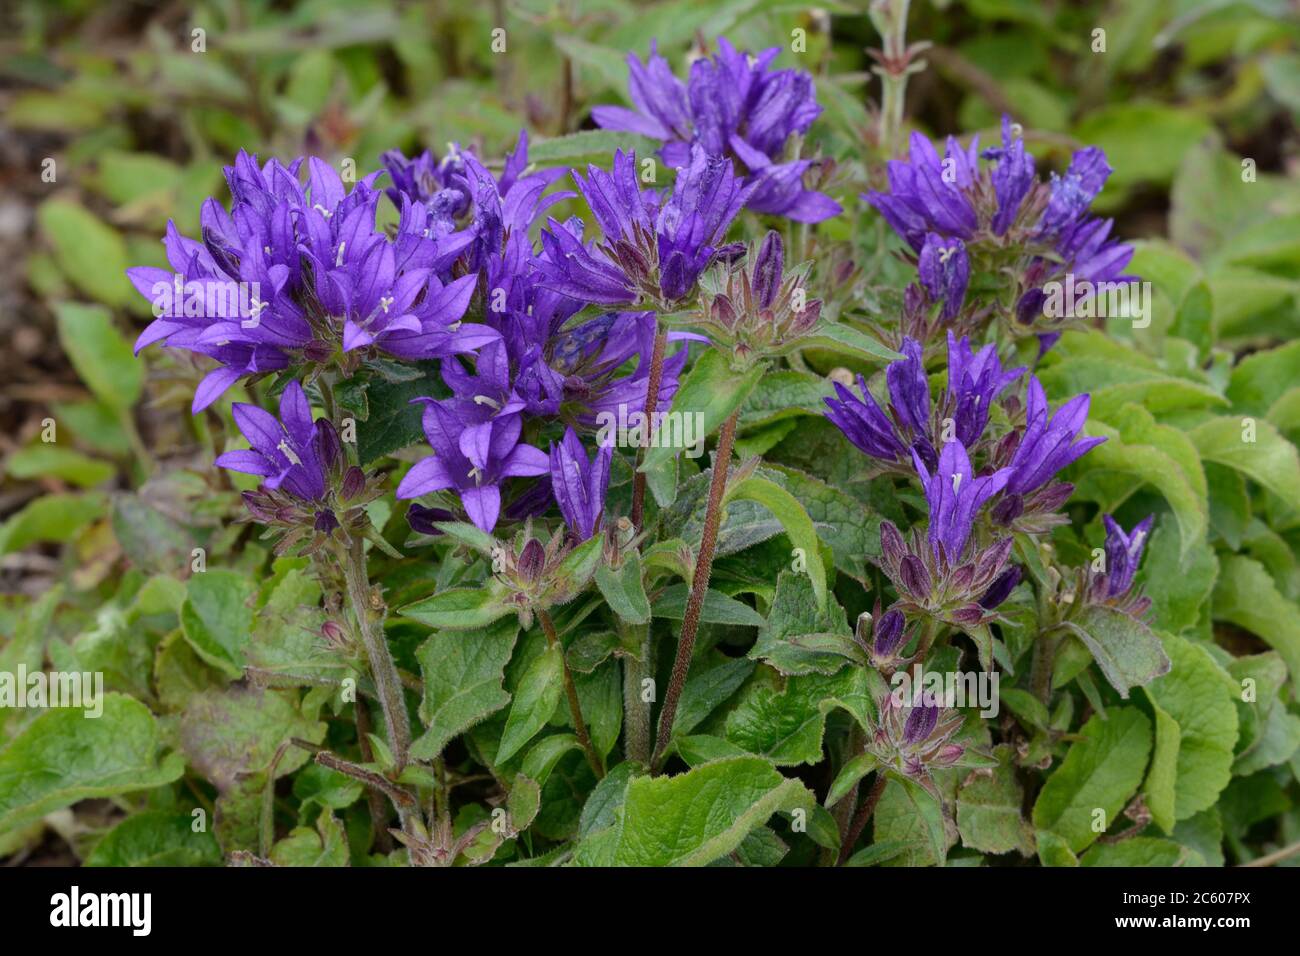 Campanula glomerata Superba geclusterte Glockenblumen dichte Cluster von dunkelviolett-violetten glockenförmigen Blüten Stockfoto